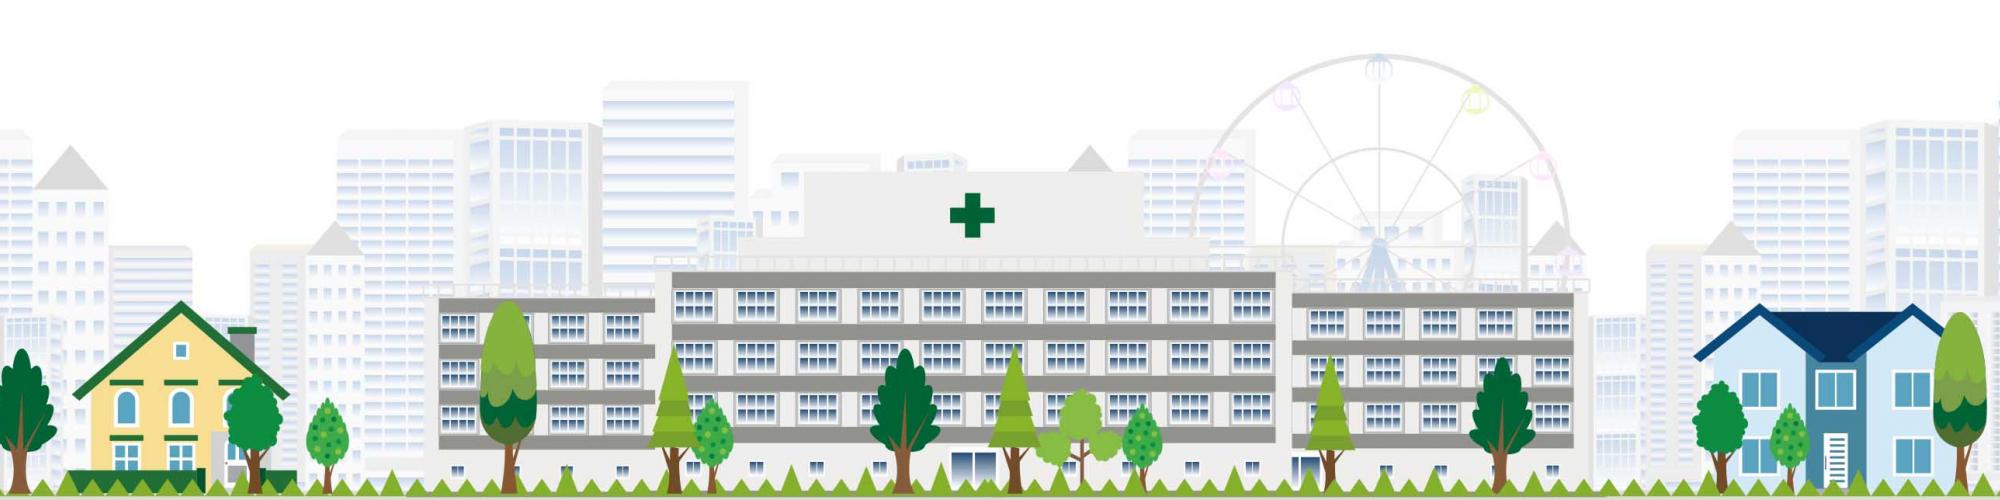 Johanniter Krankenhaus Rheinhausen GmbH